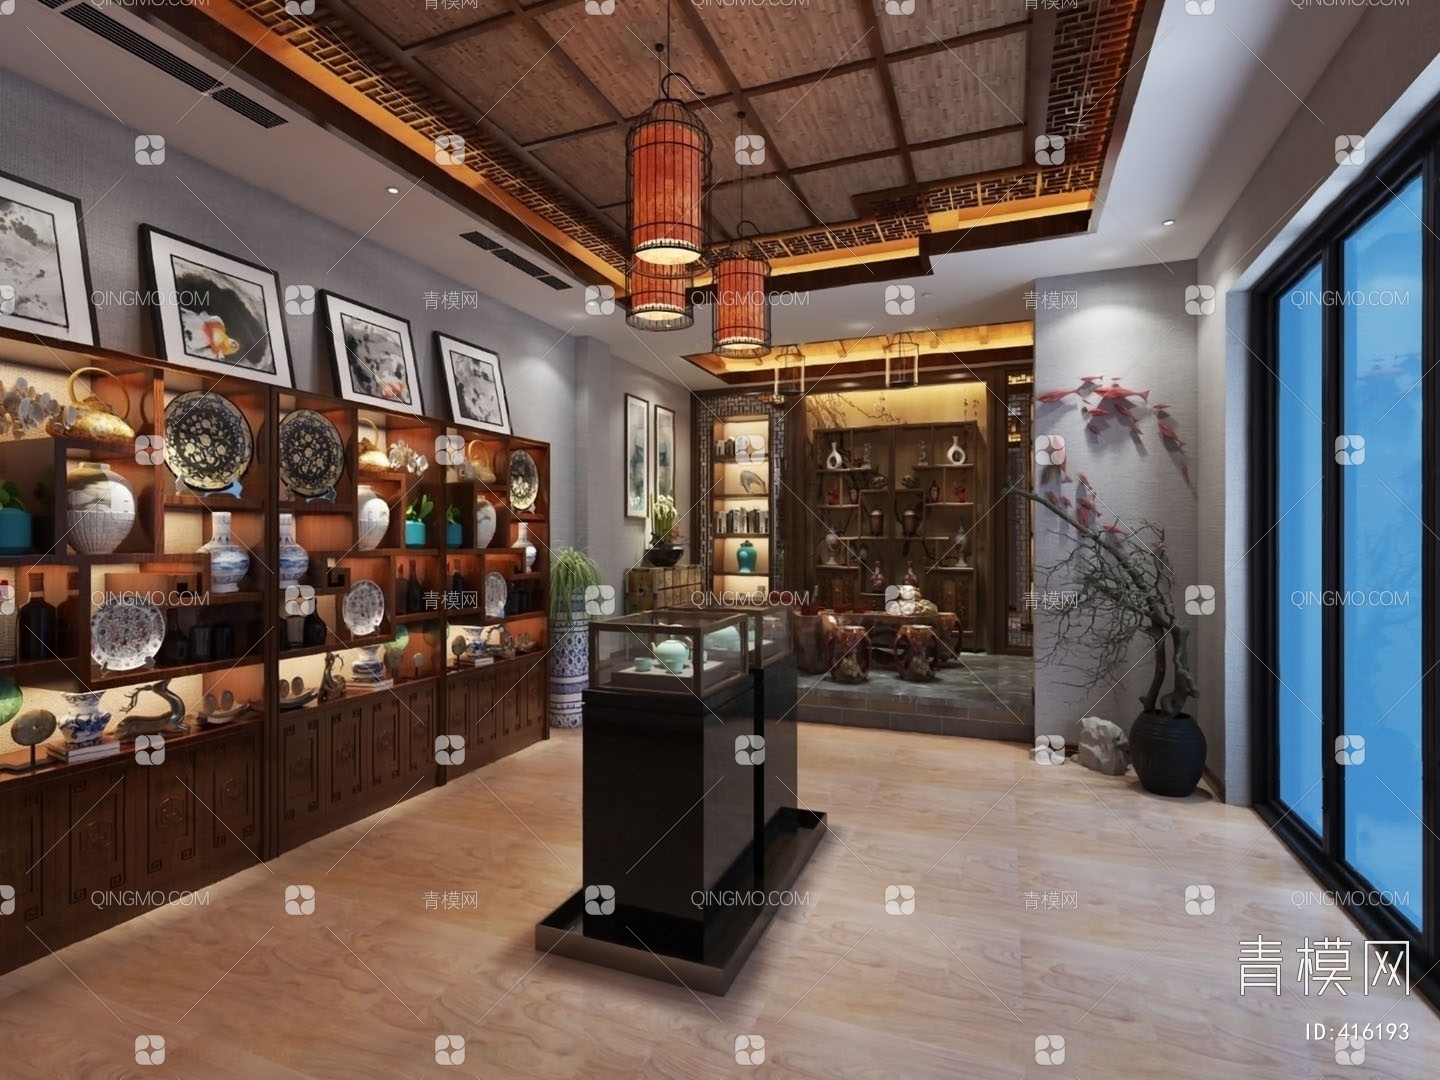 现代古董收藏店展厅3D模型【ID:54101489】_知末3d模型网